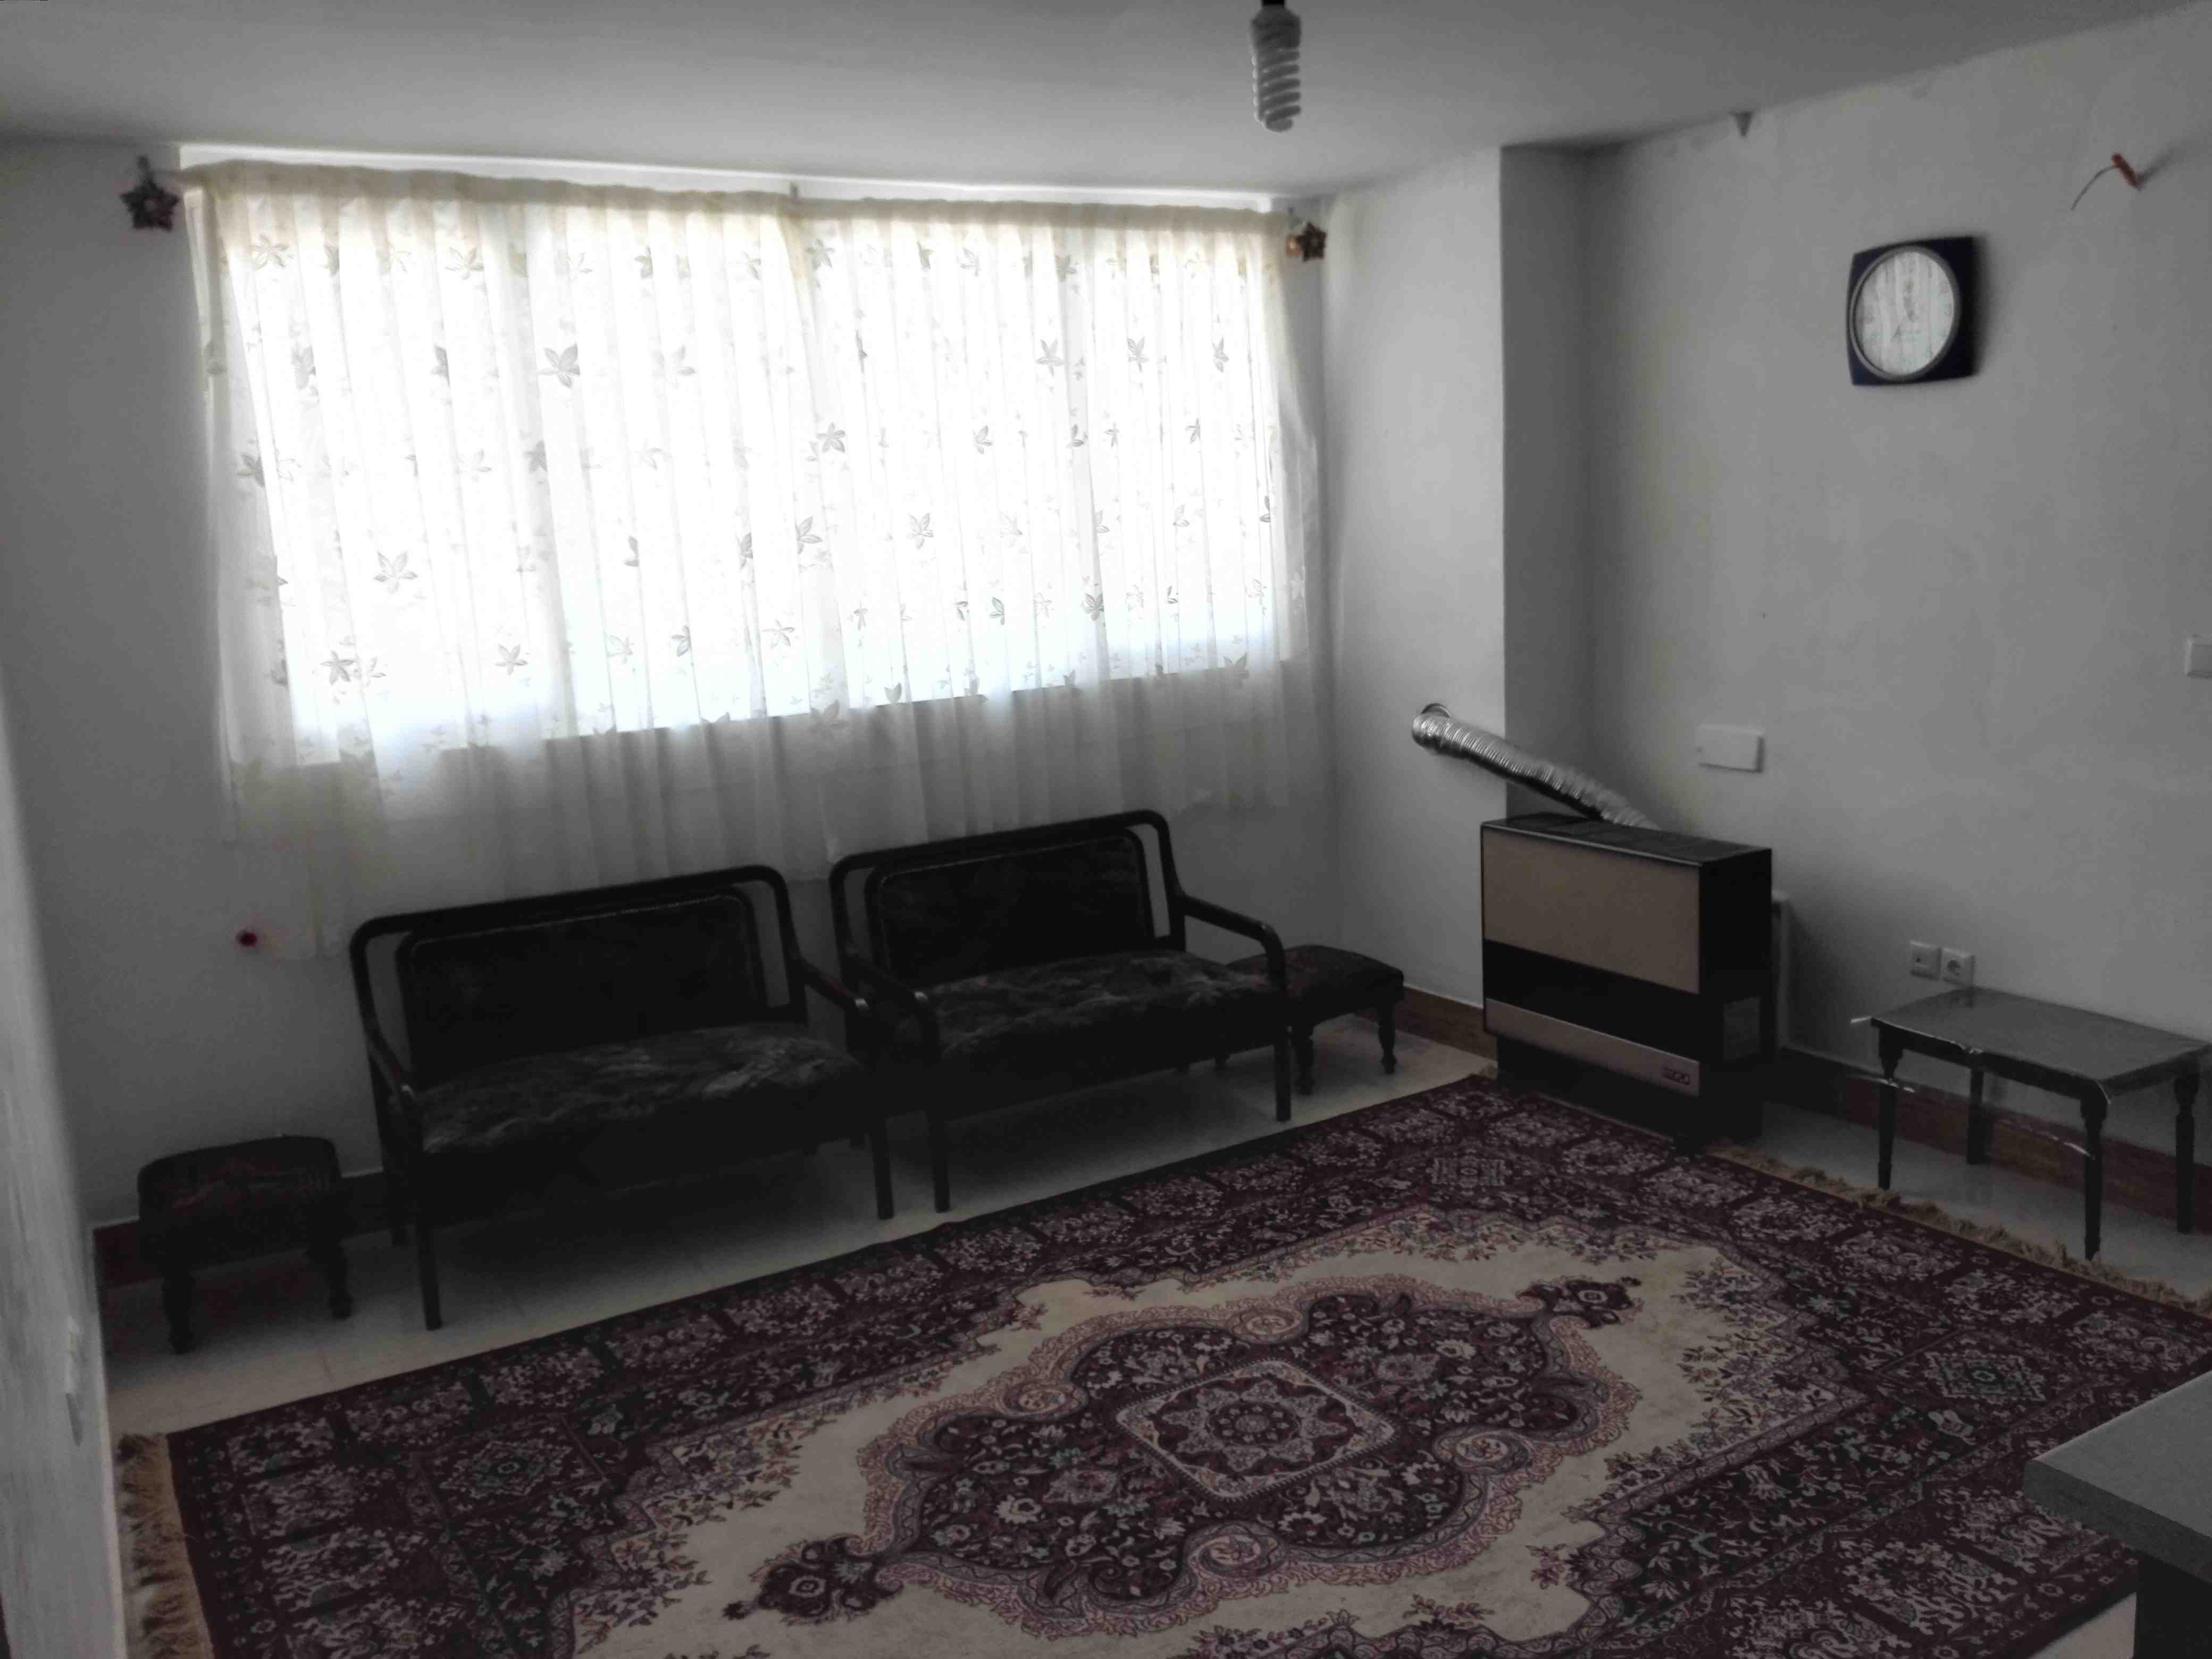 شهری اجاره  آپارتمان مبله در بلوار امام حسین سپیدان